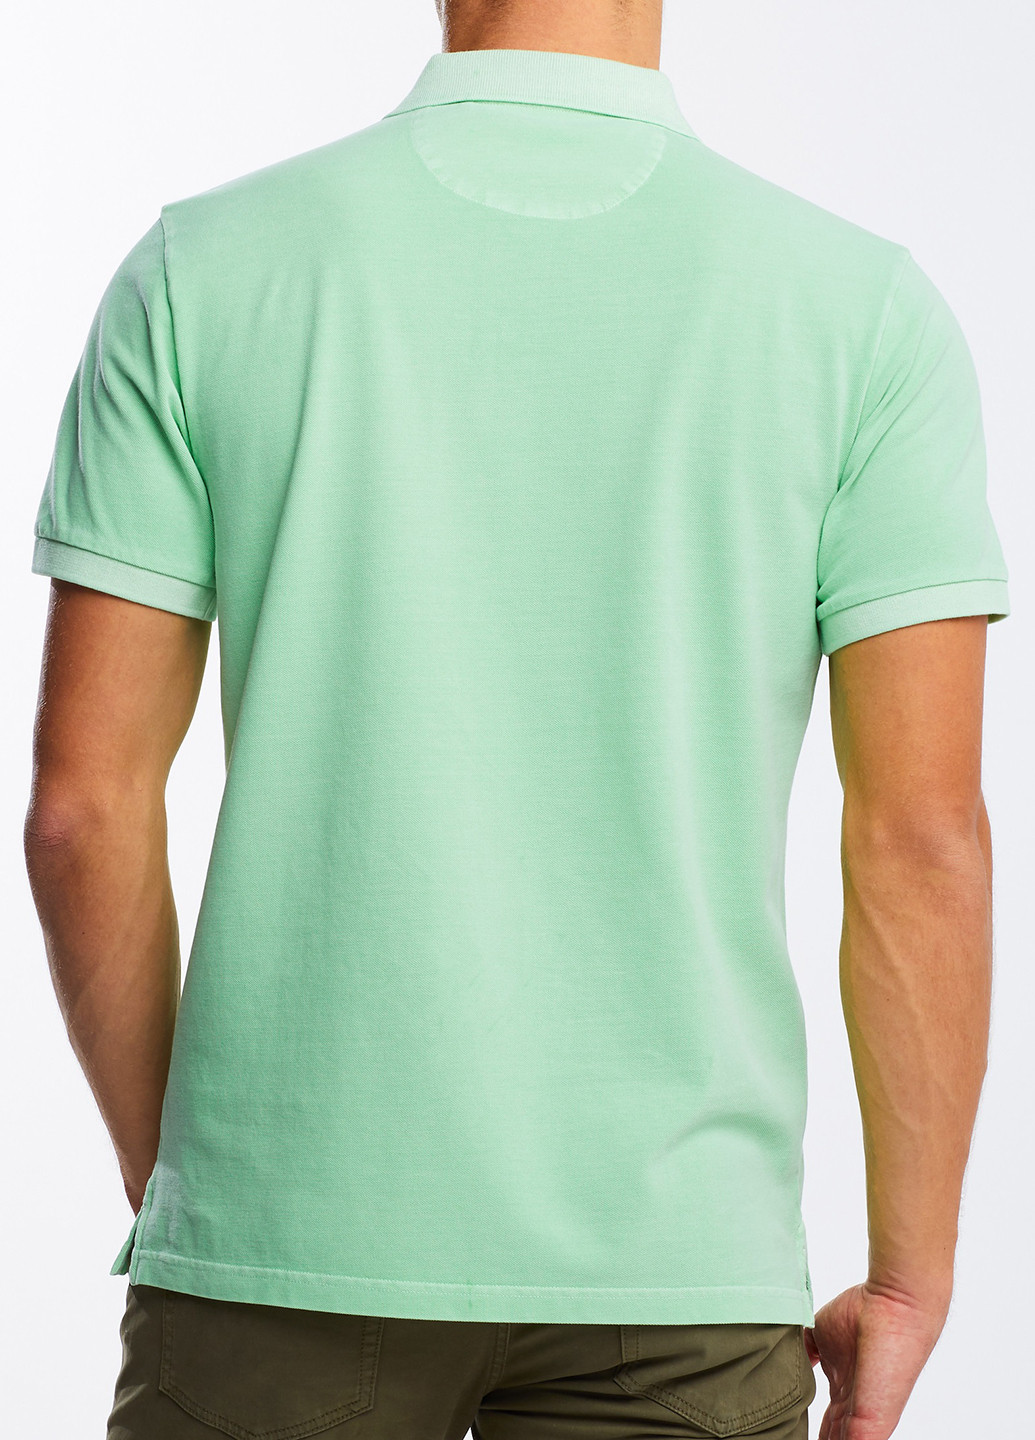 Салатовая футболка-поло для мужчин Gant однотонная